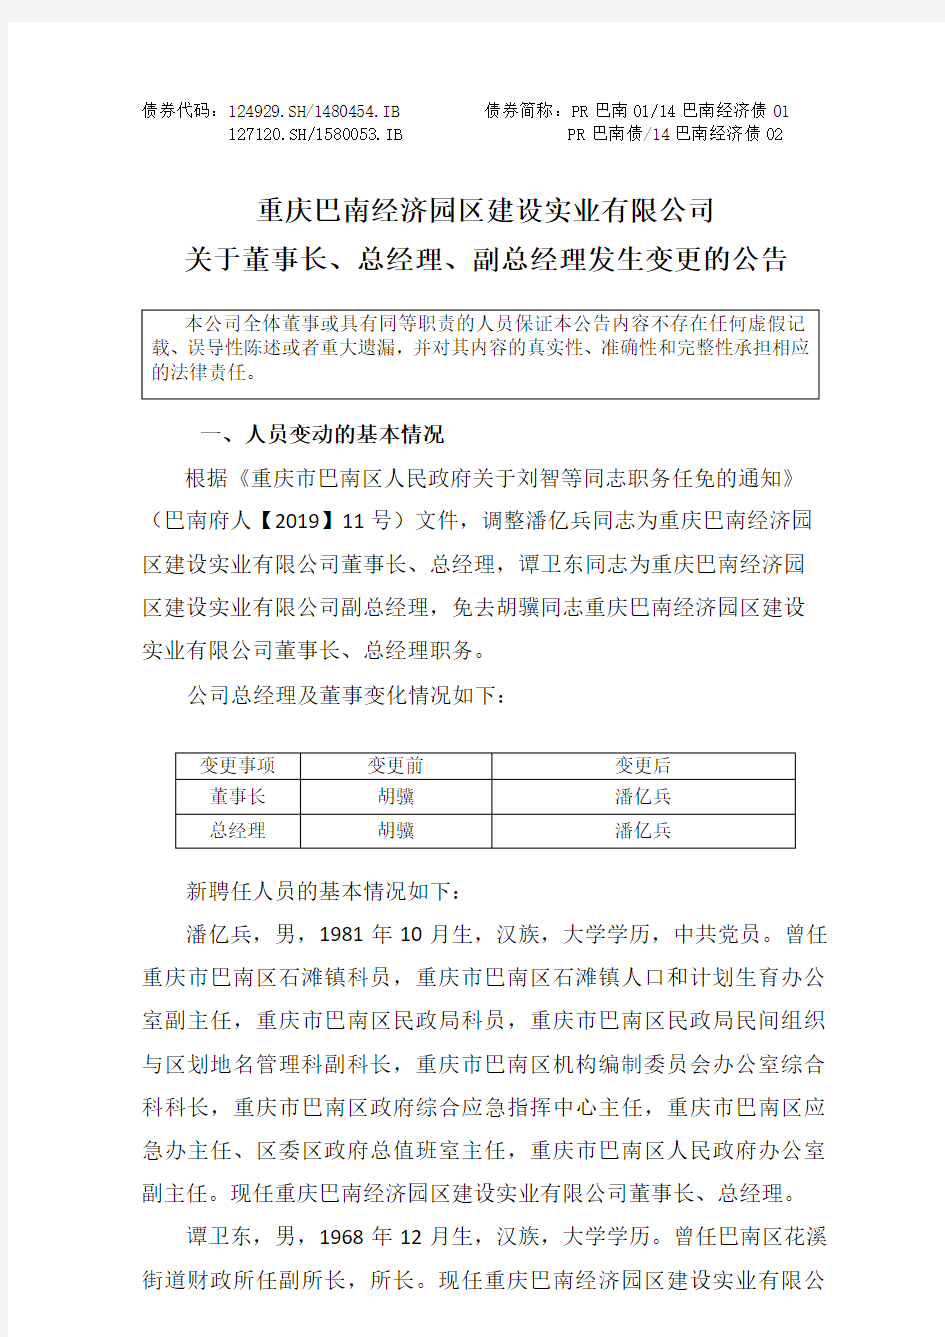 重庆巴南经济园区建设实业有限公司关于董事长、总经理、副总经理发生变更的公告 (1)